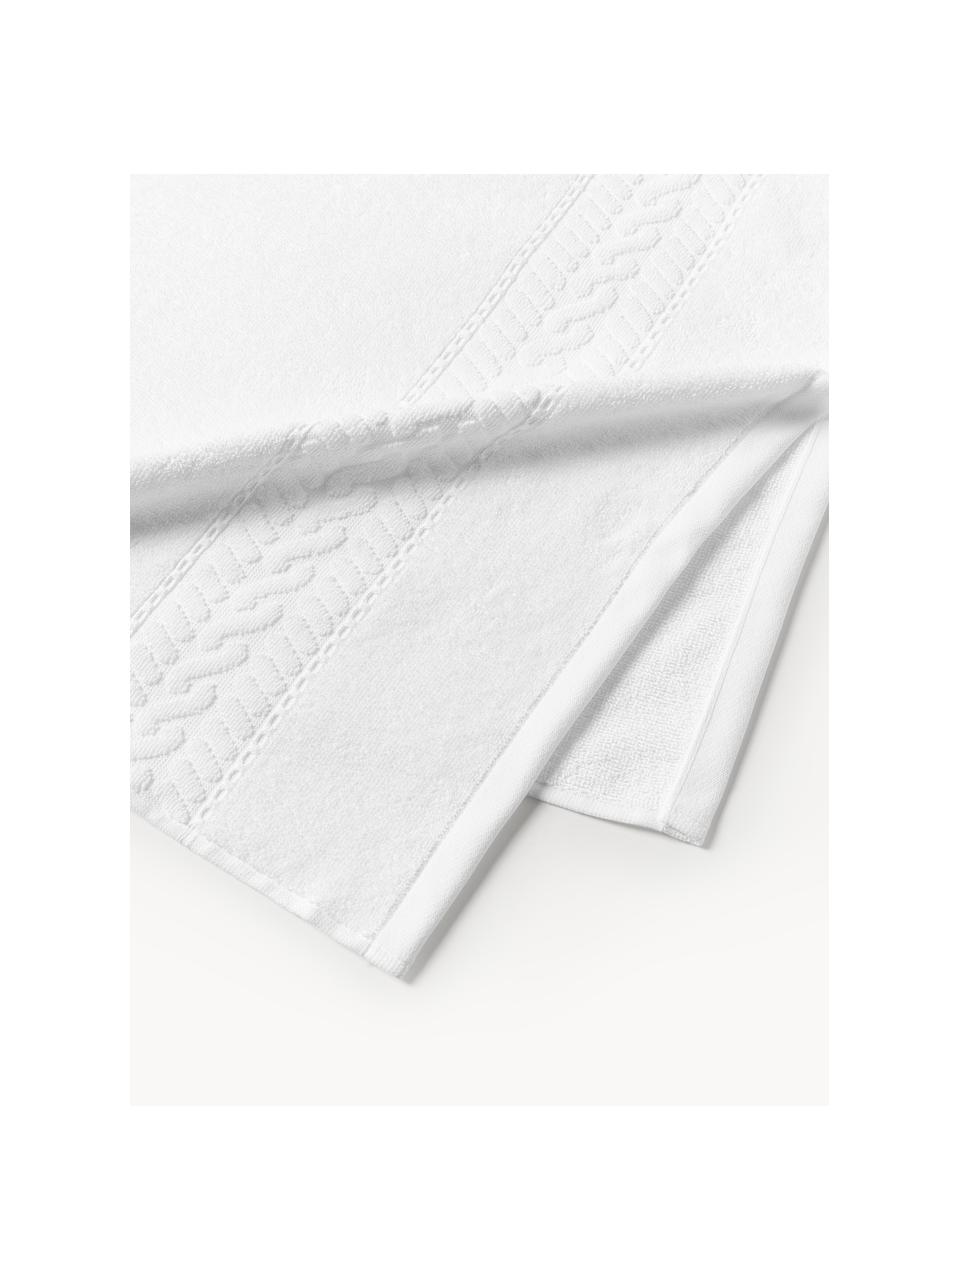 Handtuch Cordelia, in verschiedenen Grössen, 100 % Baumwolle, Weiss, Handtuch, B 50 x L 100 cm, 2 Stück